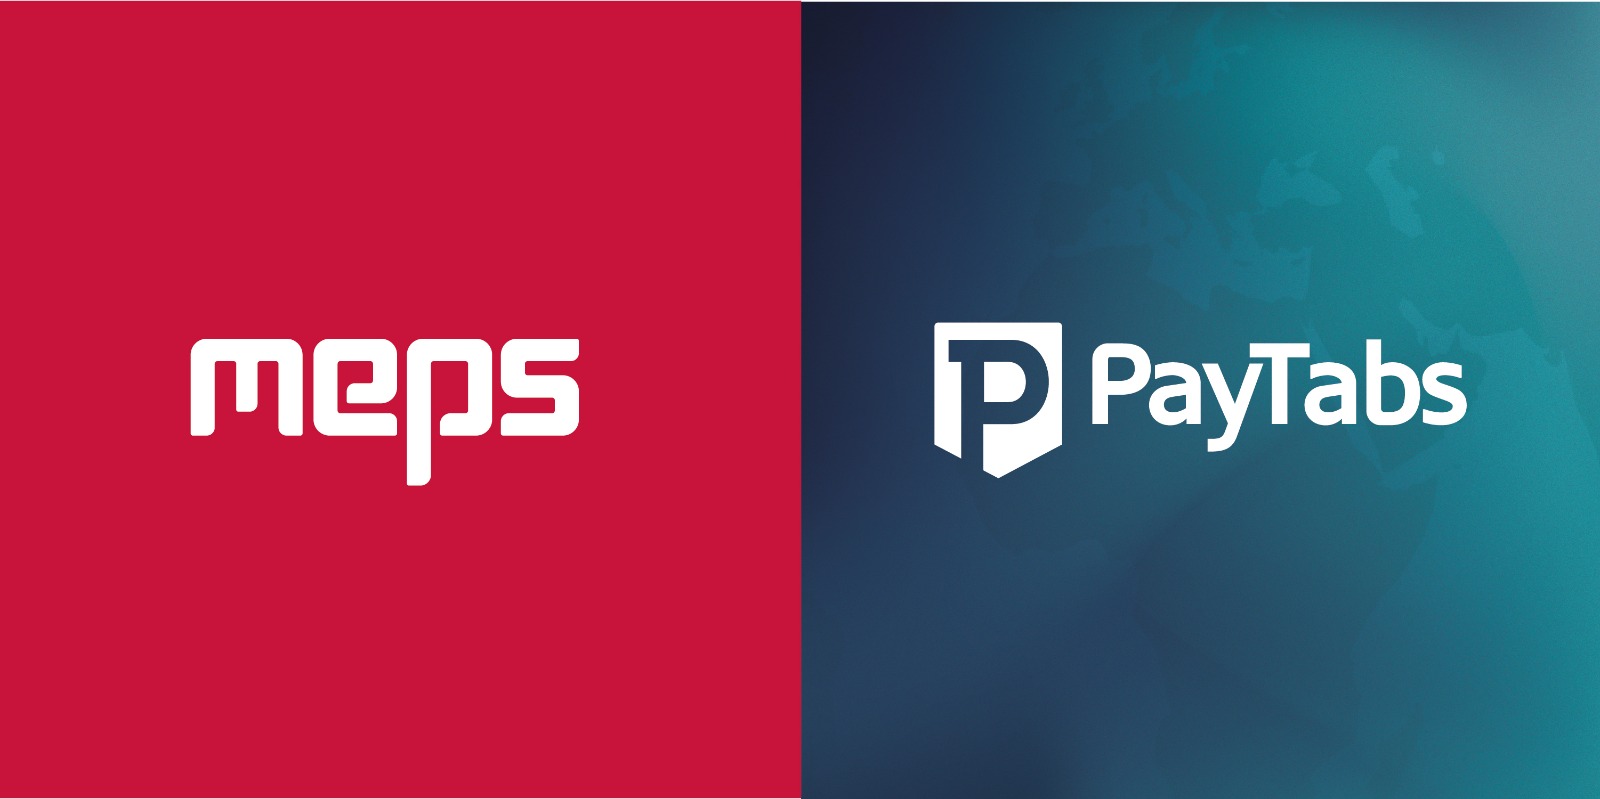 PayTabs ﻭﺷﺭﻛﺔ ﺍﻟﺷﺭﻕ ﺍﻷﻭﺳﻁ ﻟﺧﺩﻣﺎﺕ ﺍﻟﺩﻓﻊ ( MEPS ) ﺗﻭﻗﻌﺎﻥ ﺍﺗﻔﺎﻗﻳﺔ ﺗﻌﺎﻭﻥ ﻣﺷﺗﺭﻙ ﻟﻠﺩﺧﻭﻝ ﺇﻟﻰ ﺳﻭﻕ ﺍﻟﺗﺟﺎﺭﺓ ﺍﻹﻟﻛﺗﺭﻭﻧﻳﺔ ﺍﻟﻧﺎﺷﺊ ﻓﻲ ﻓﻠﺳﻁﻳﻥ, بيتابس